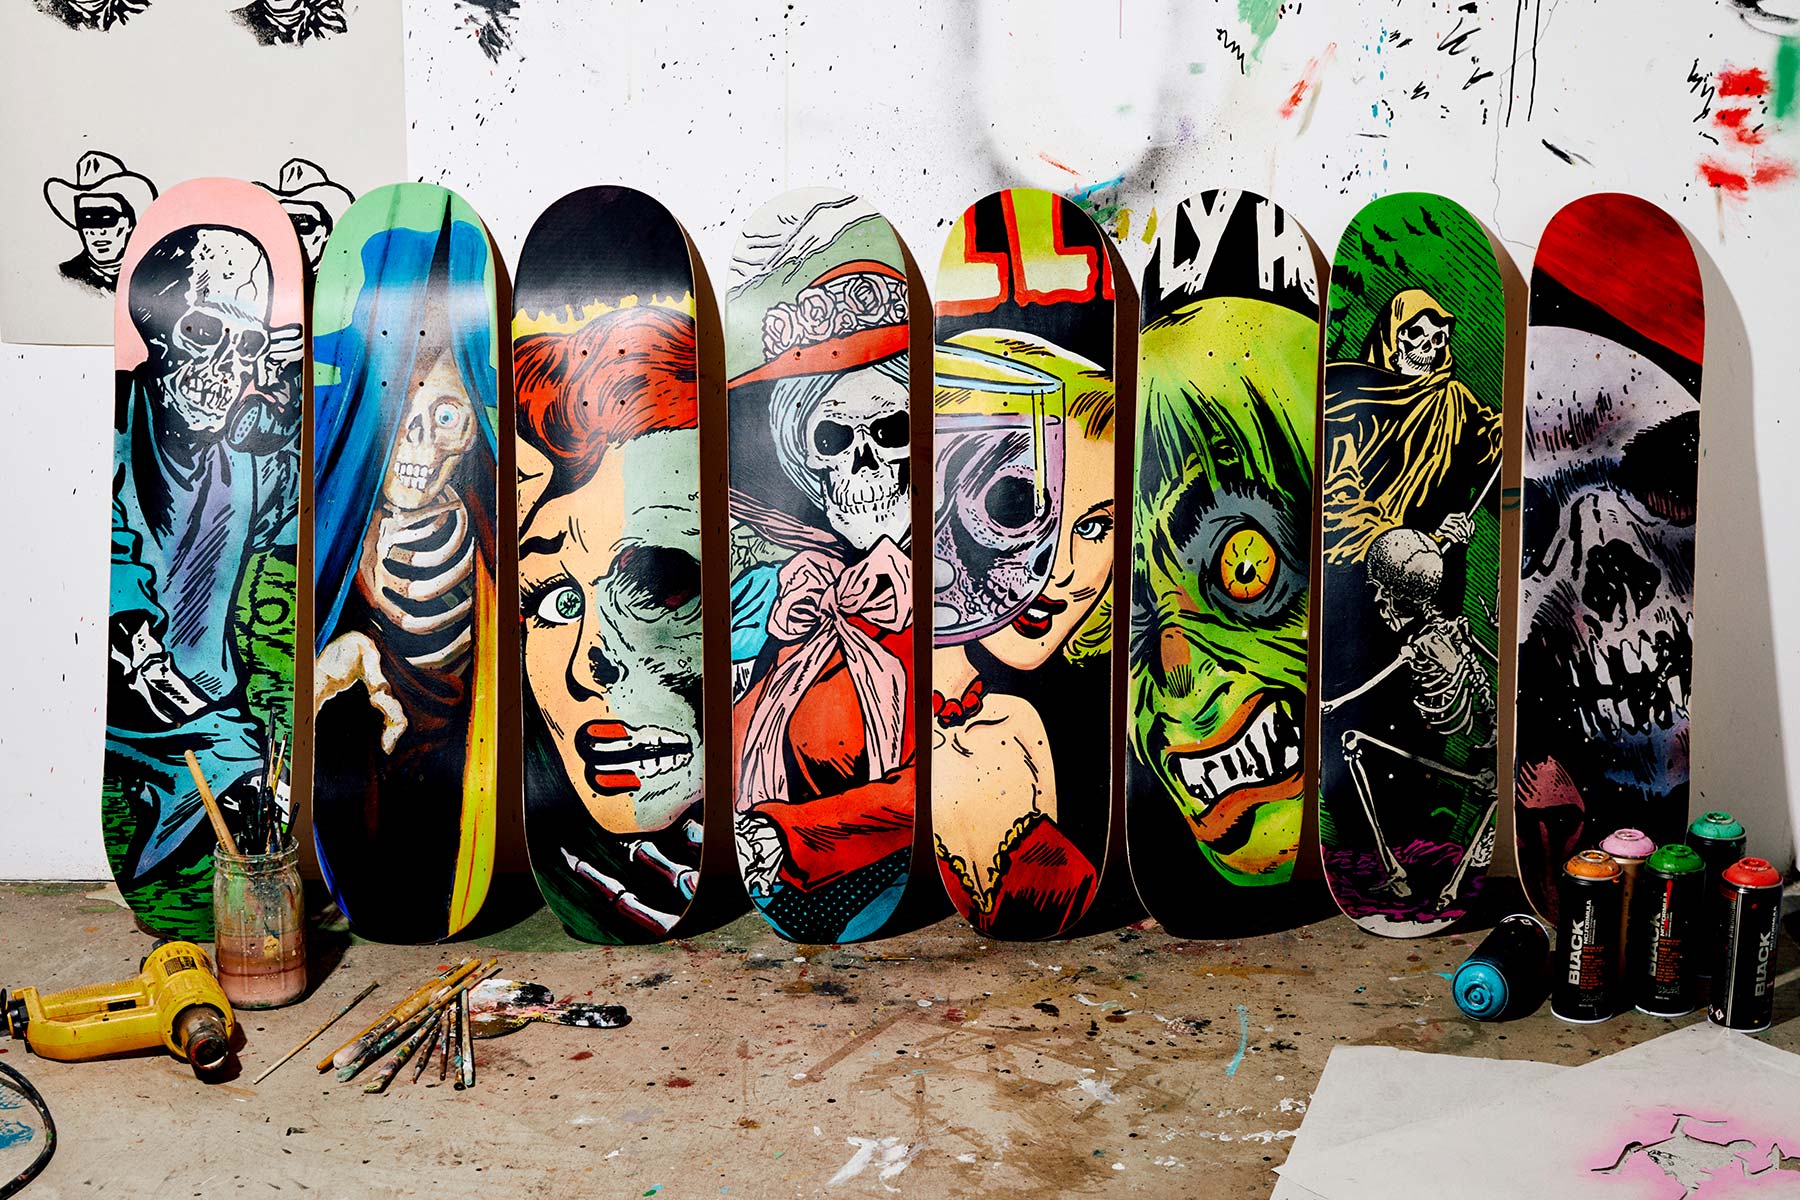 Art, Wall, Graffiti, Tints and shades, Skateboard, Font, Painting, Visual arts, Recreation, Drawing